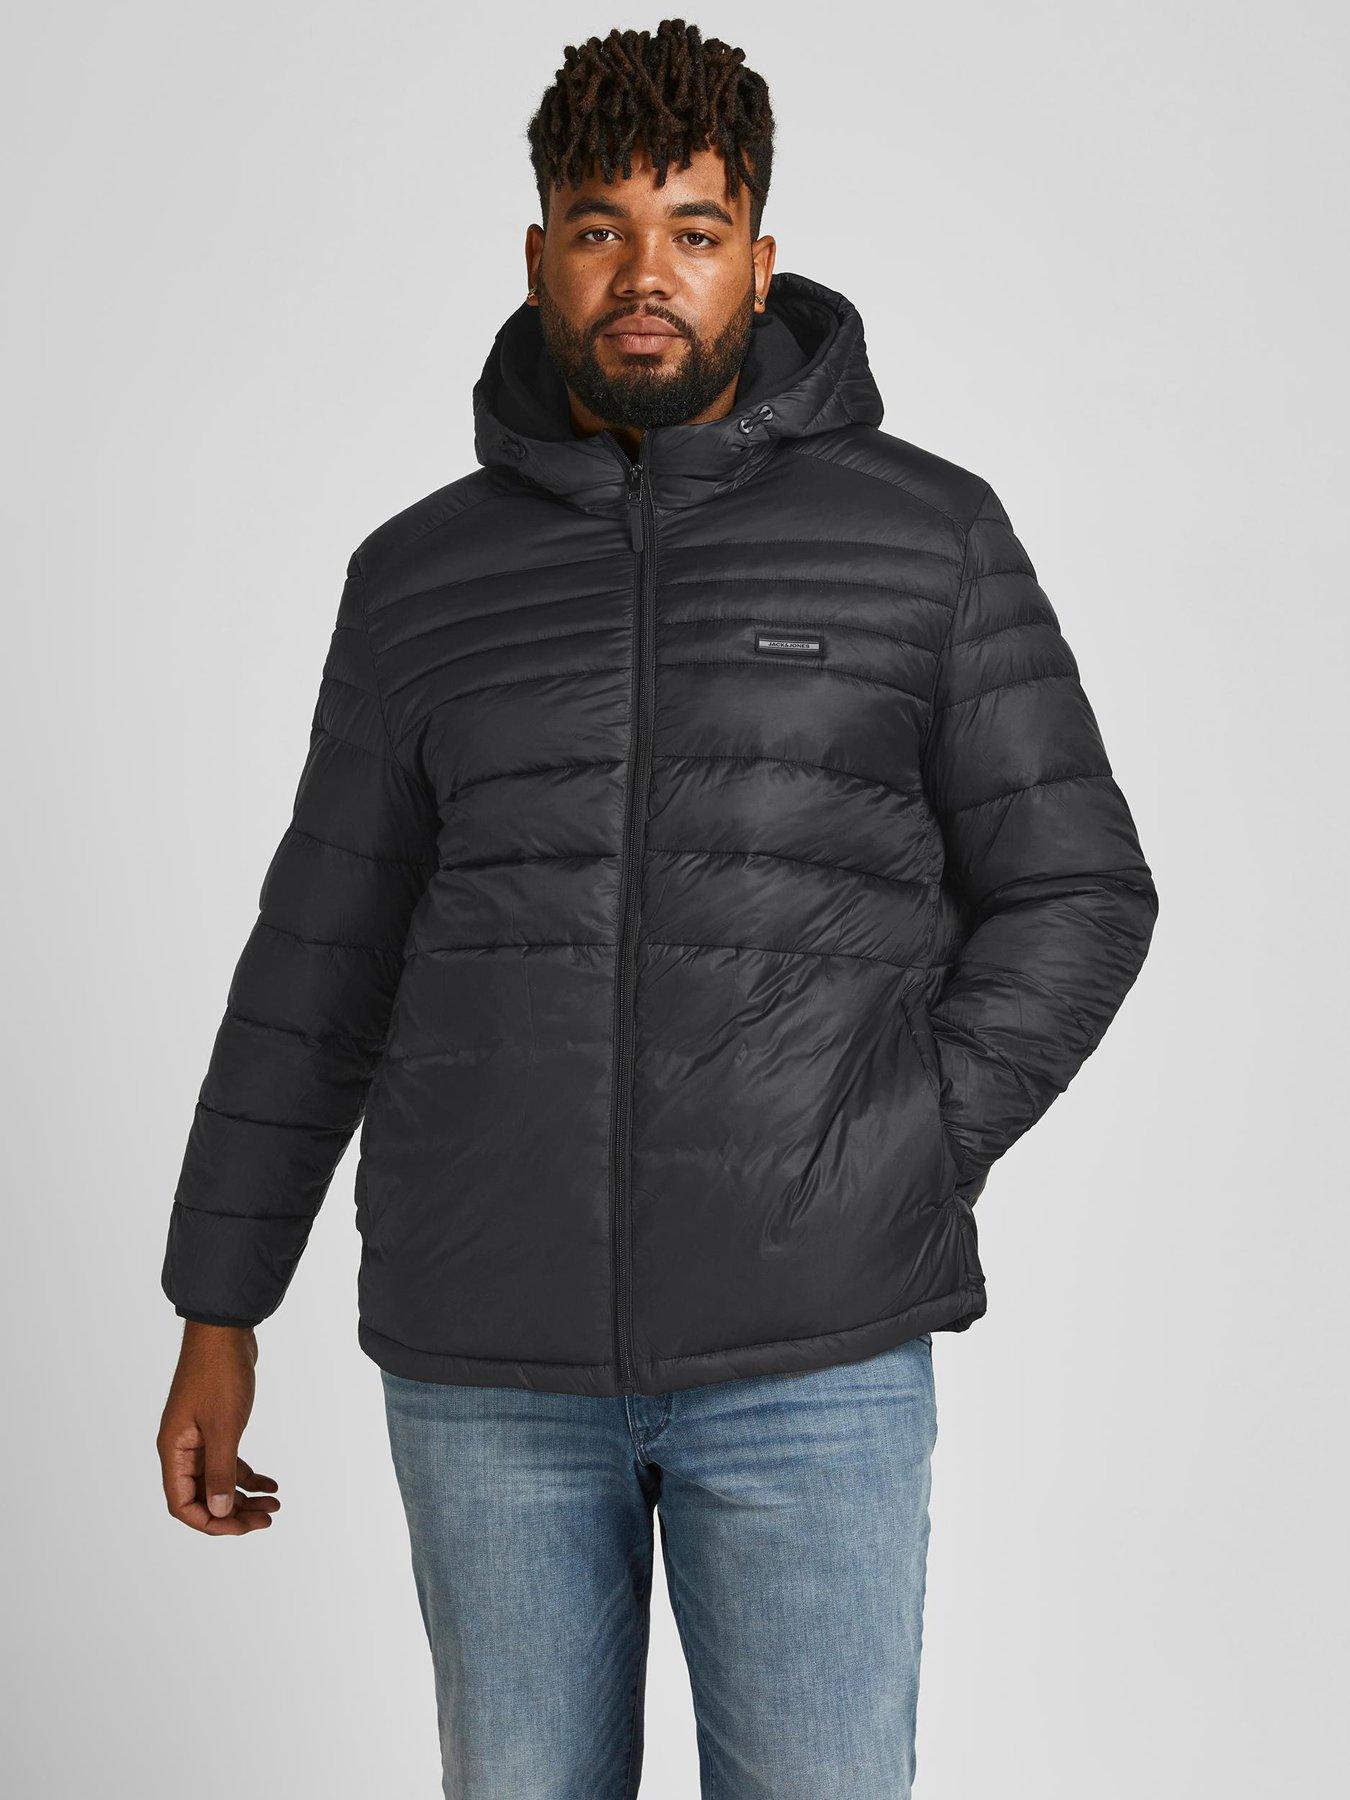 Big \u0026 Tall | Coats \u0026 jackets | Men 